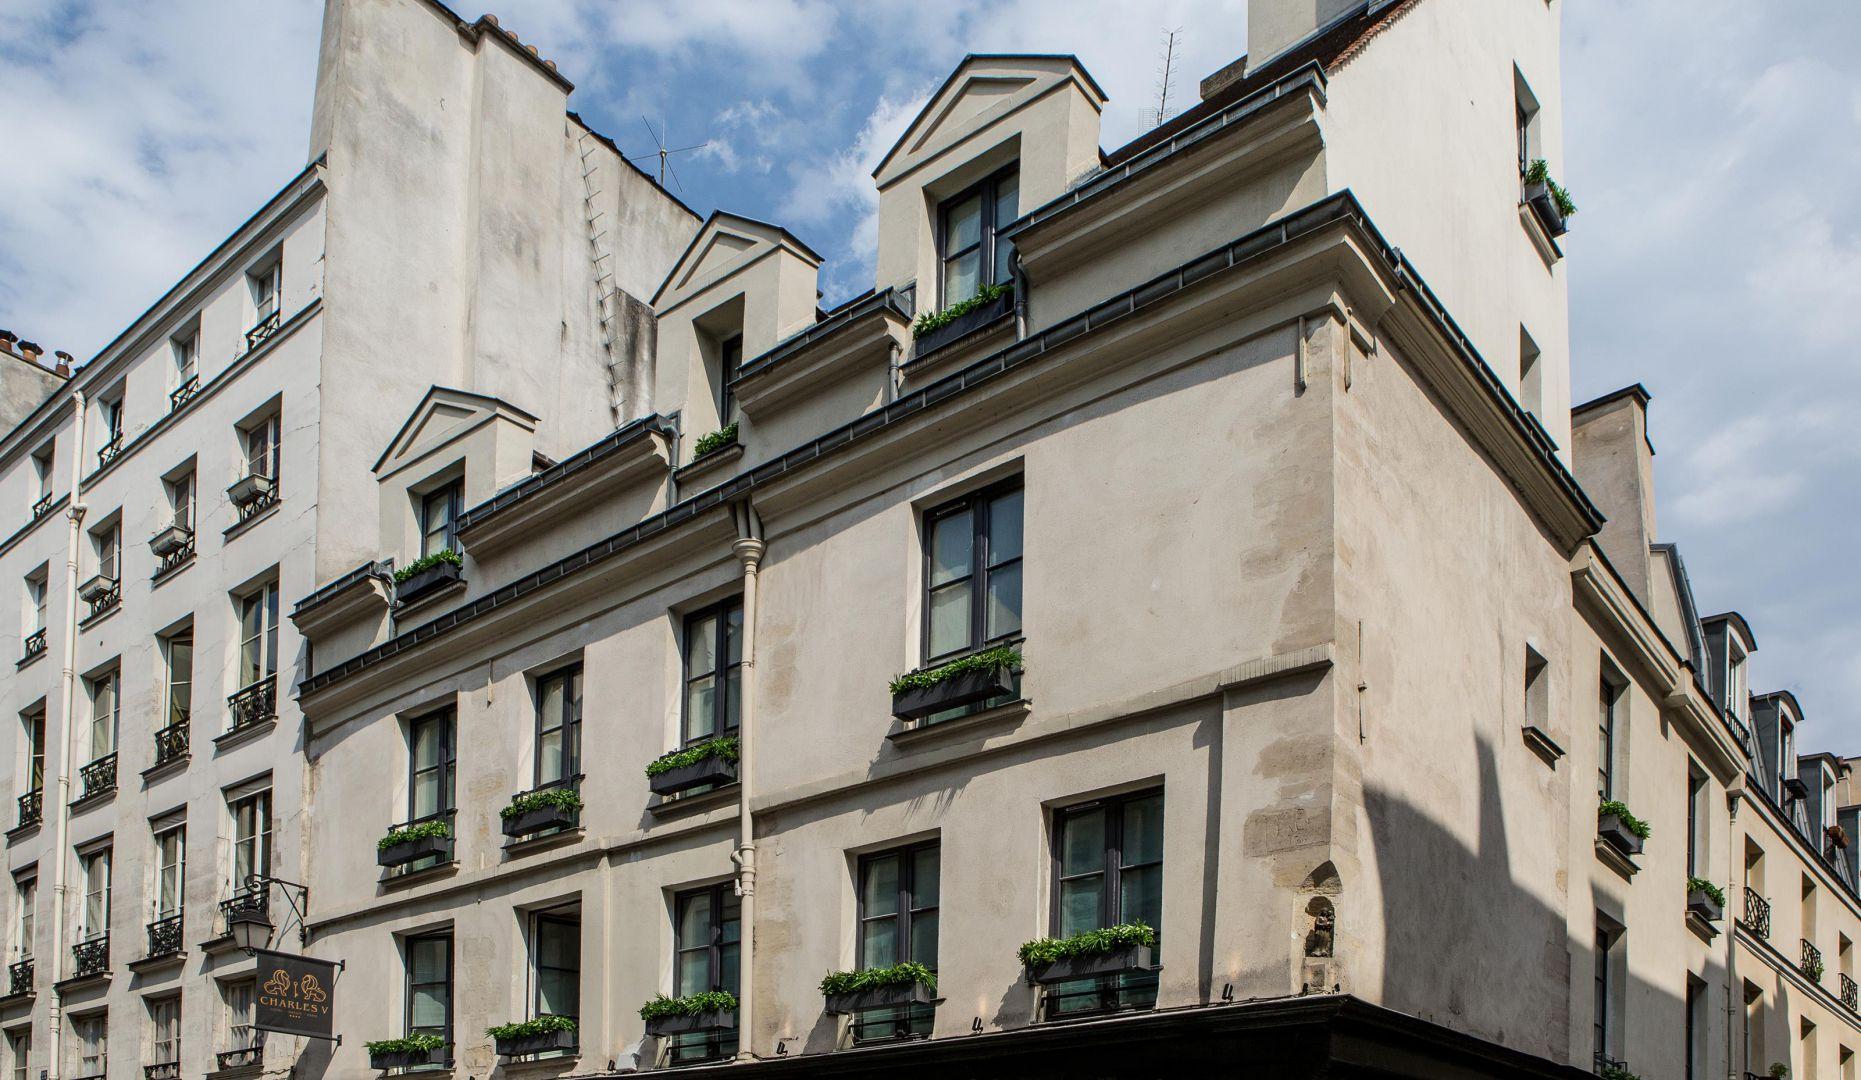 Hôtel Charles V à Paris Extérieur photo